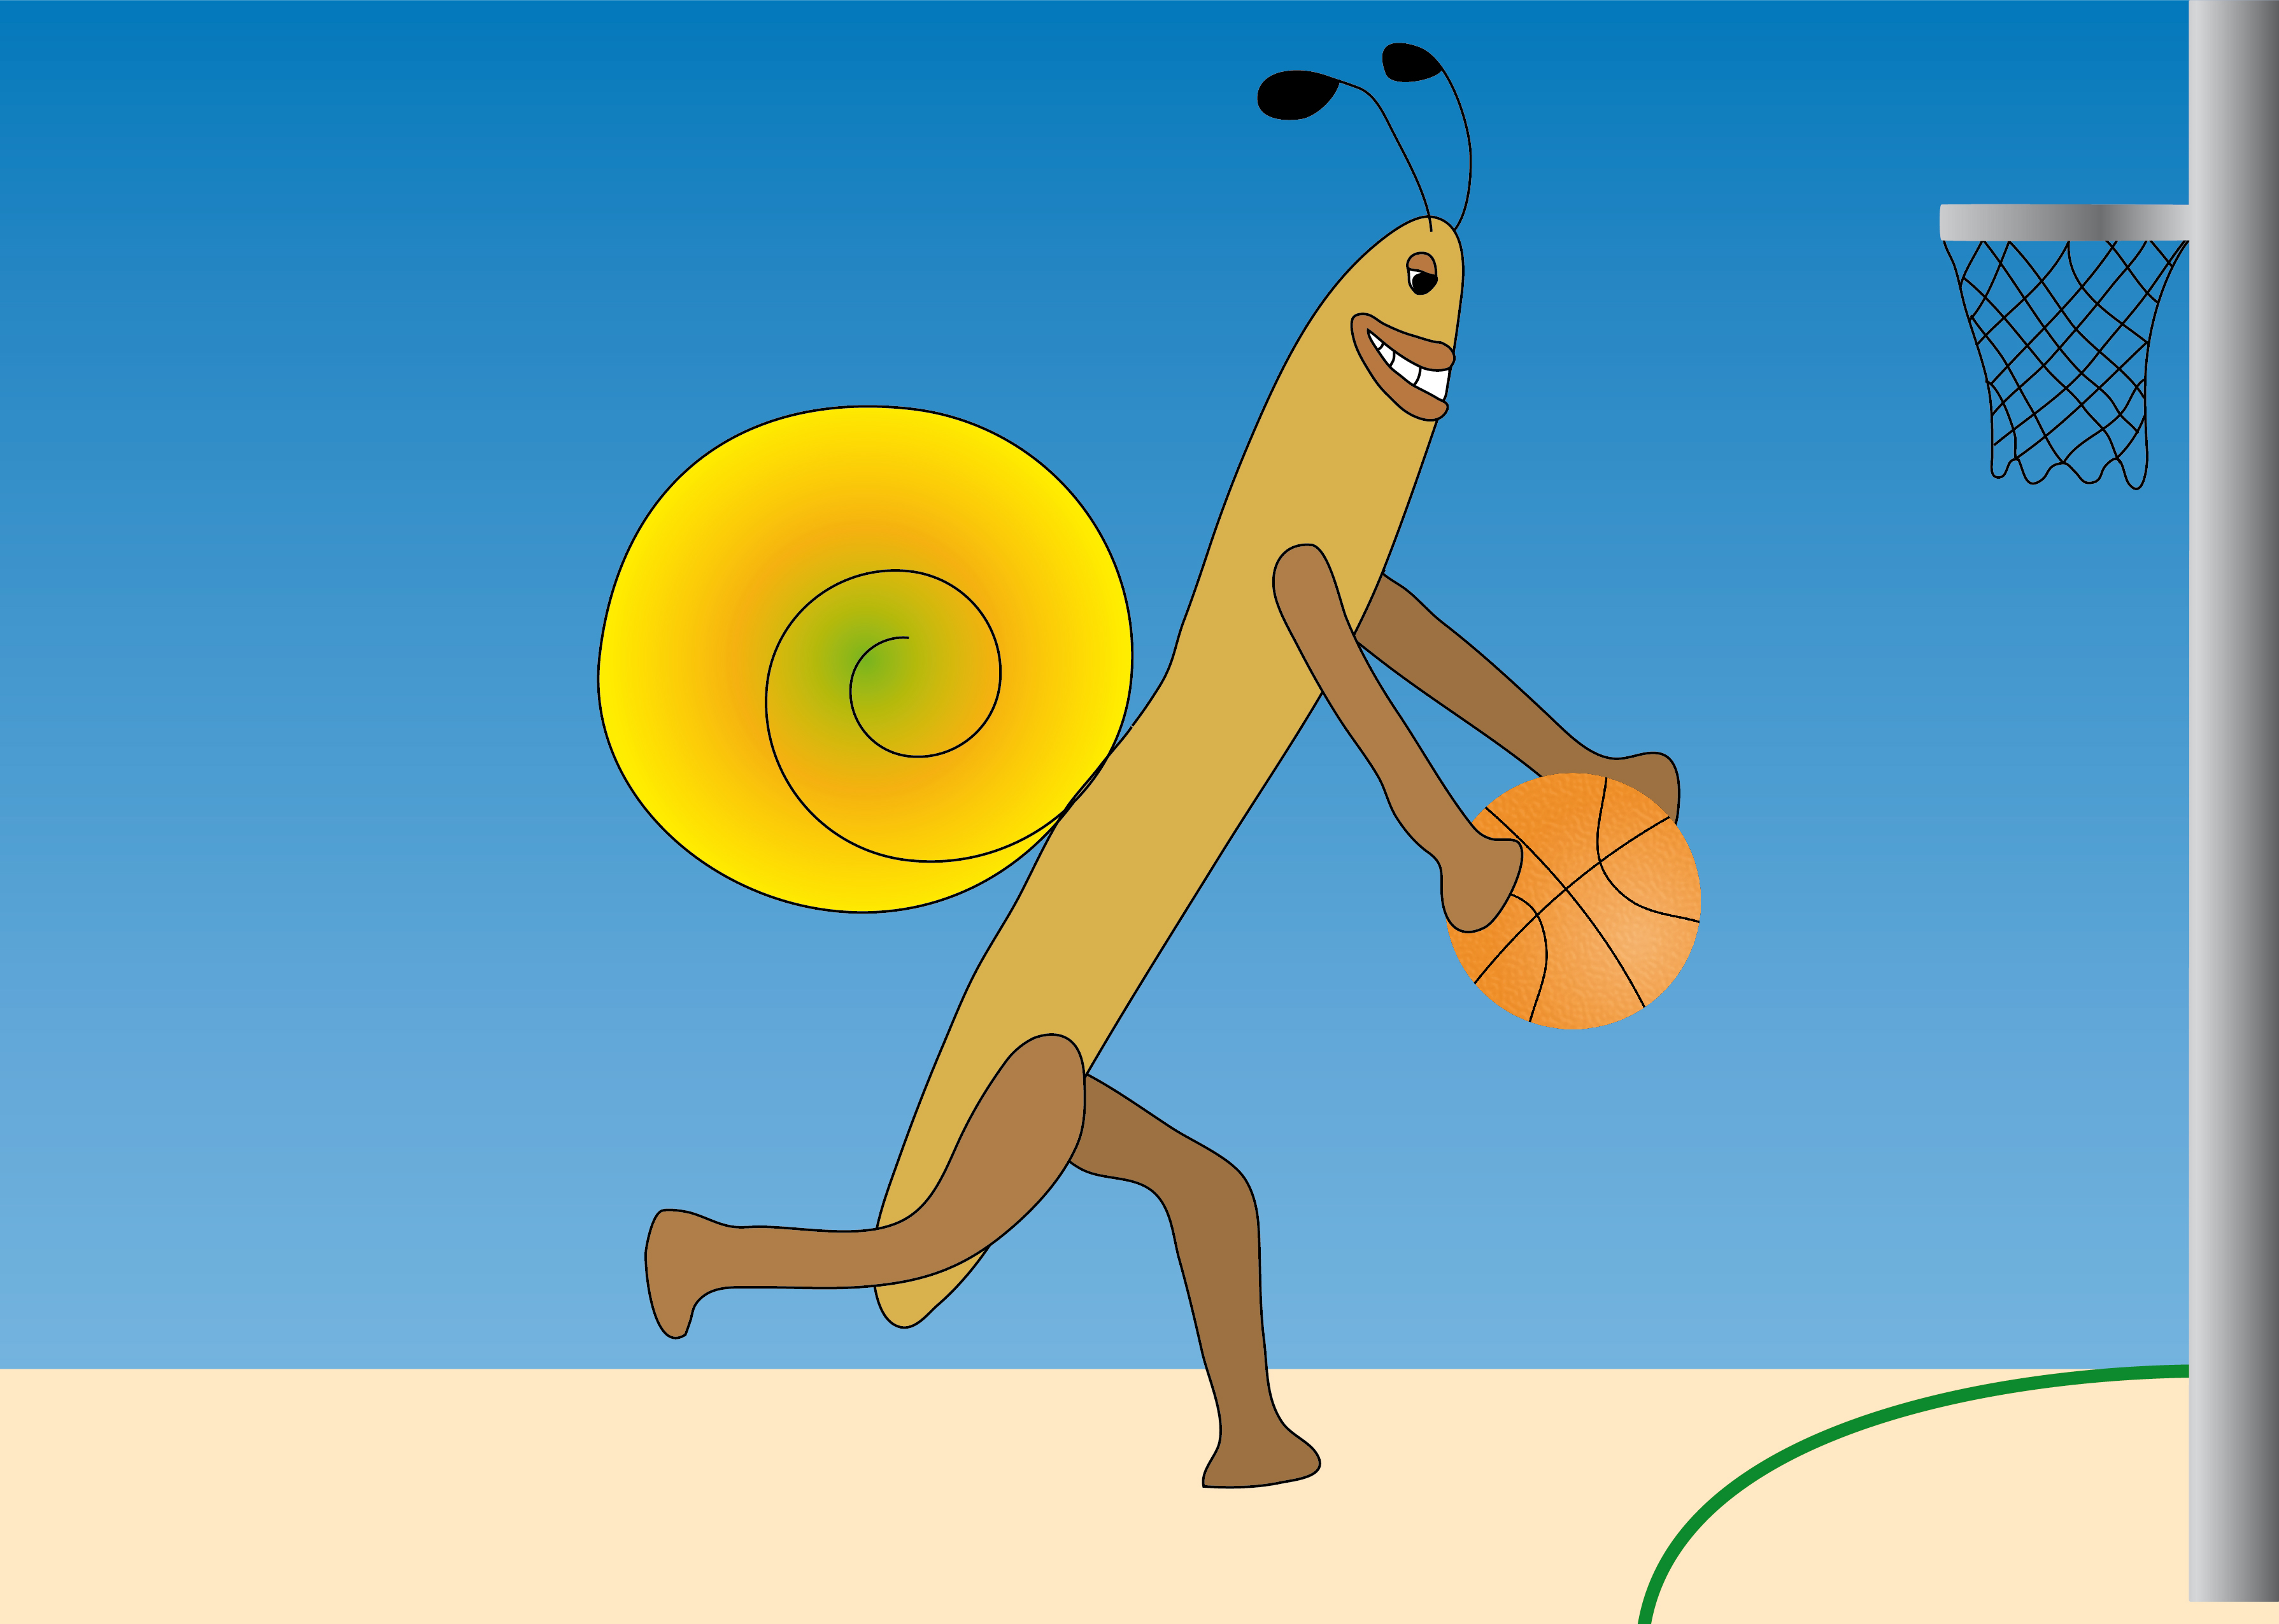 Basketballerschnecke: Illustration einer Schnecke, die Basketball spielt